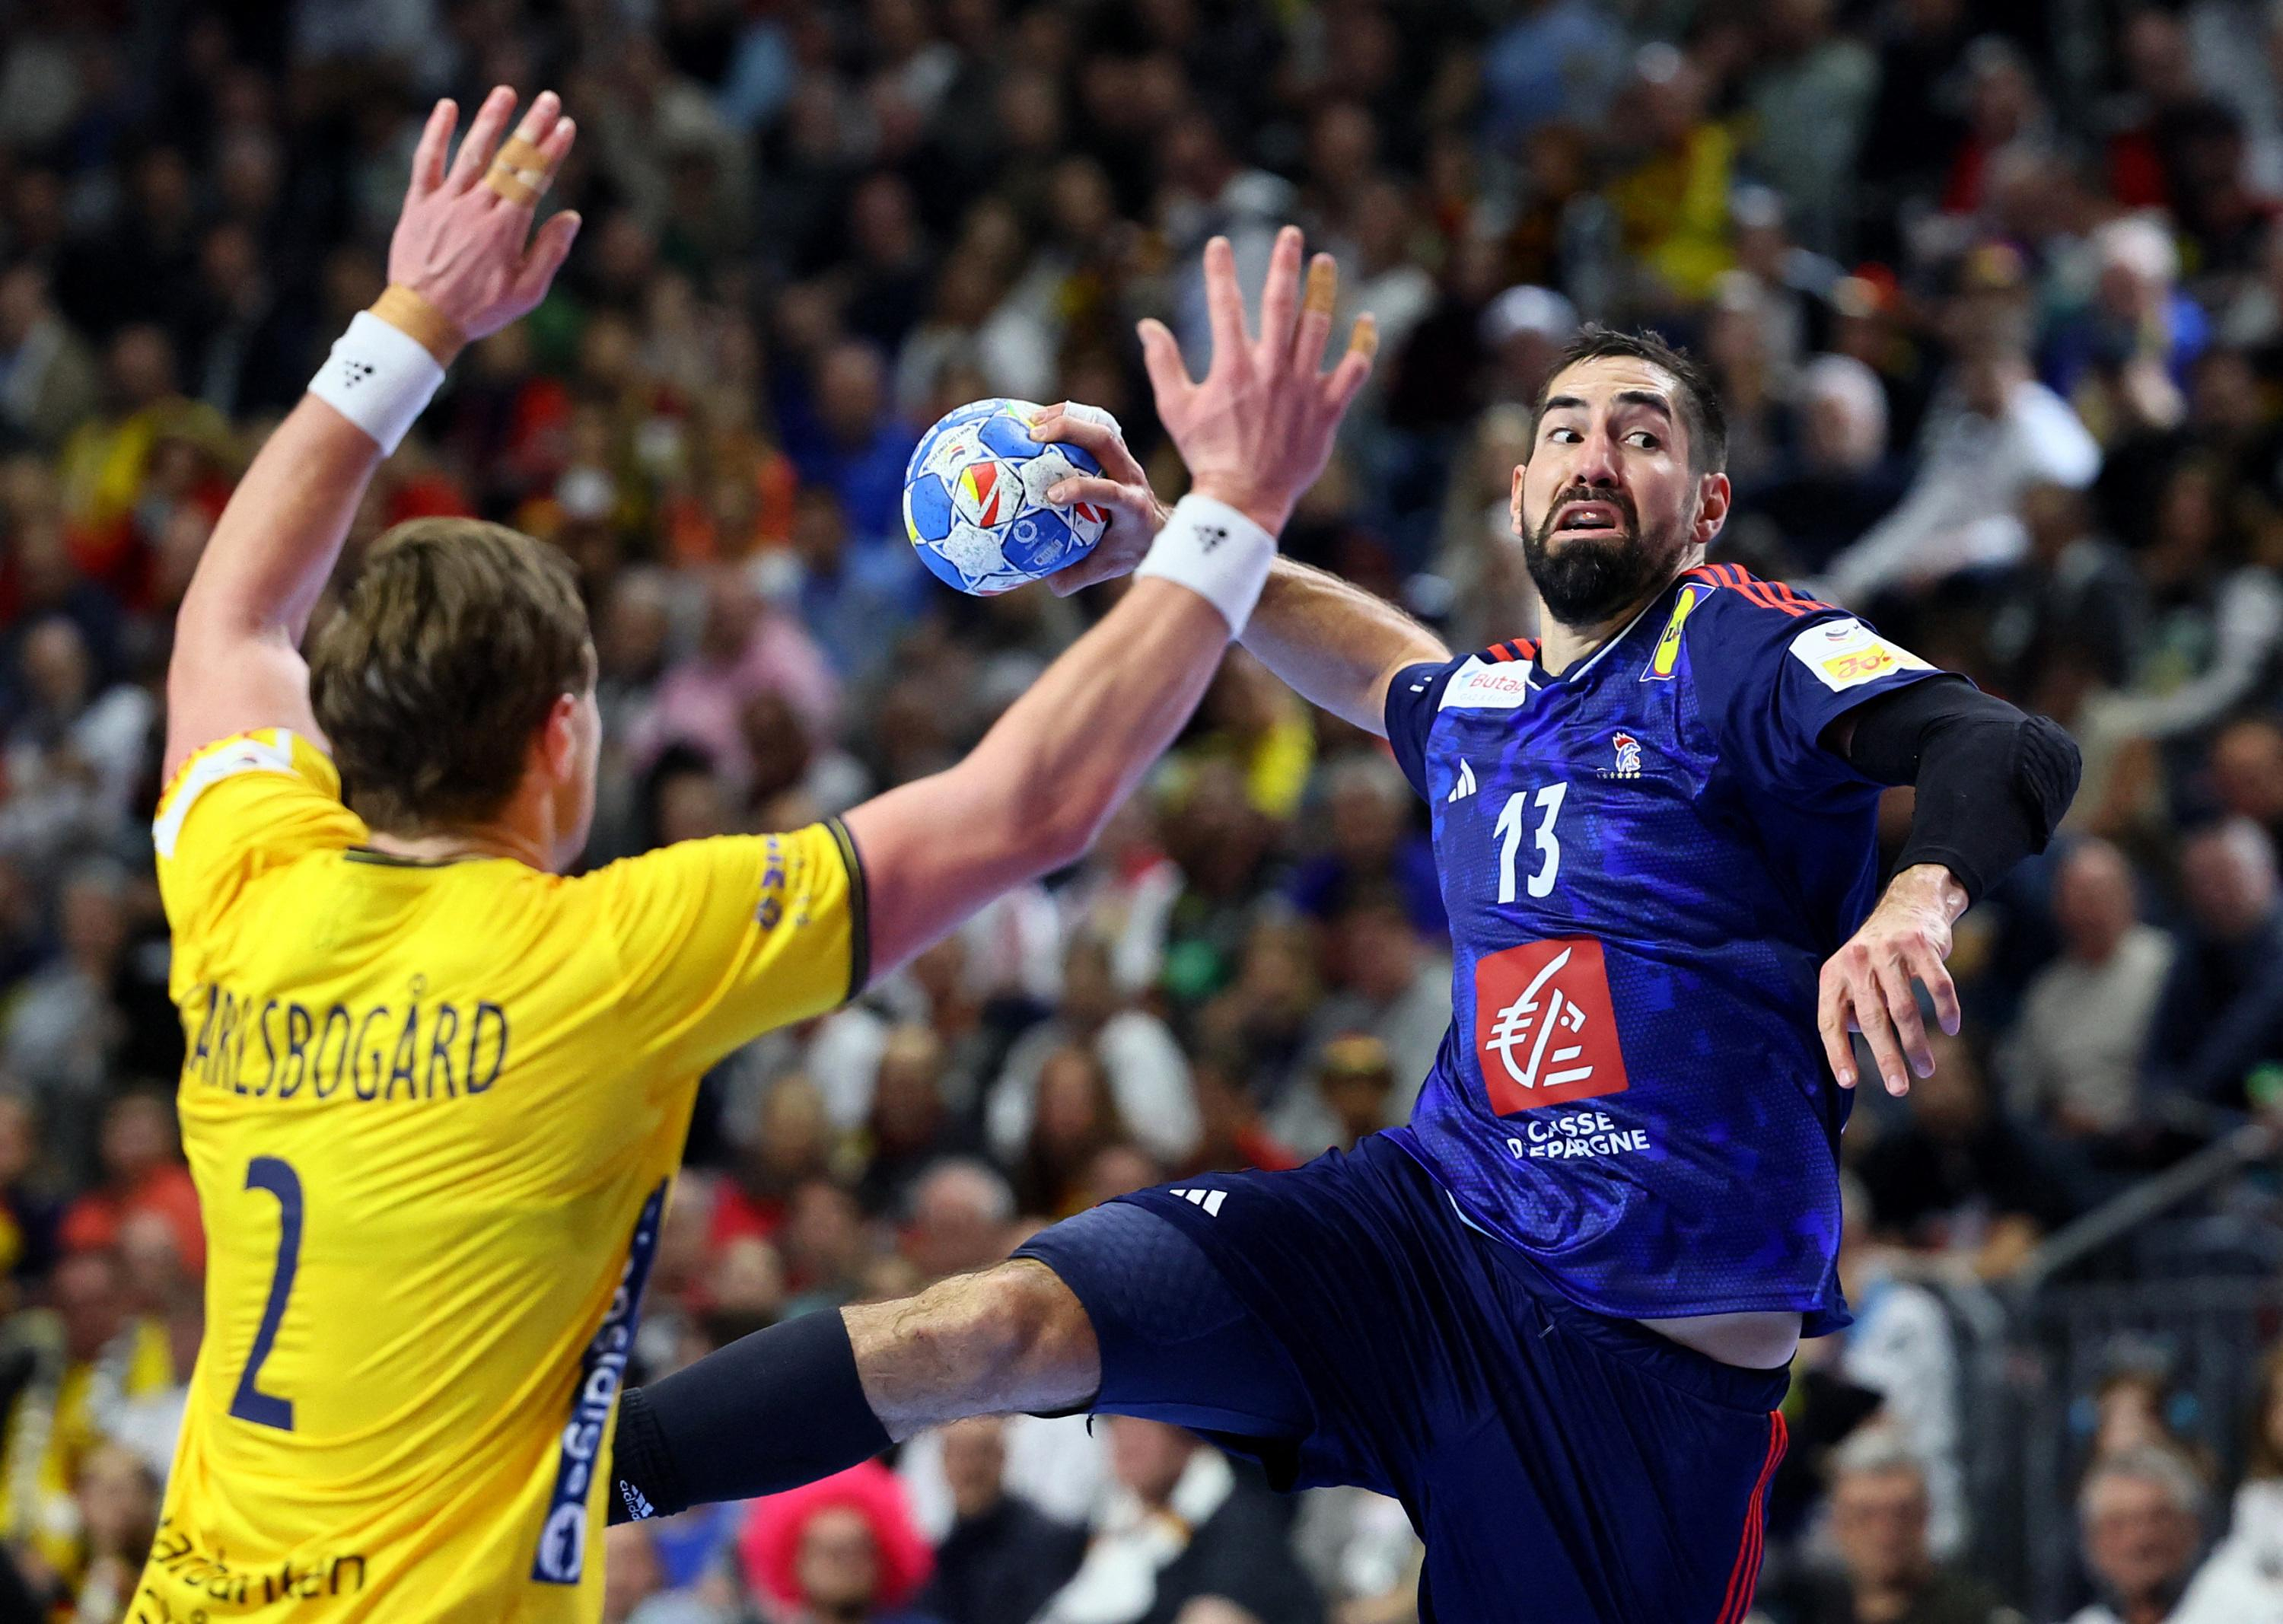 Euro handball: “It’s a miracle” for Nikola Karabatic